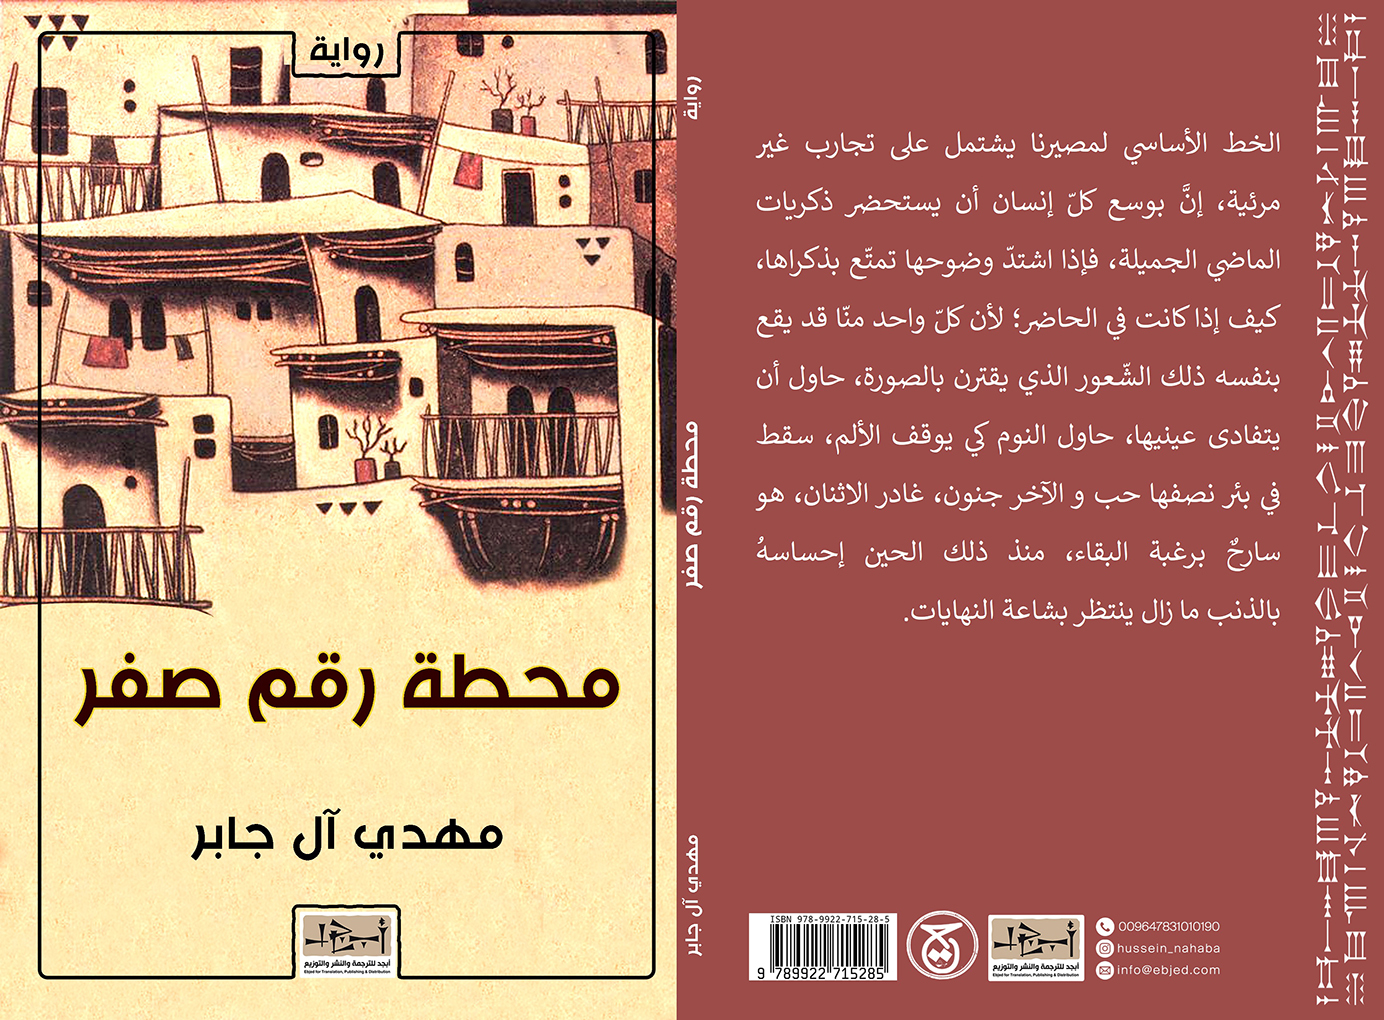 عنوان الكتاب: محطة رقم صفر       تأليف: مهدي آل جابر التصنيف: رواية